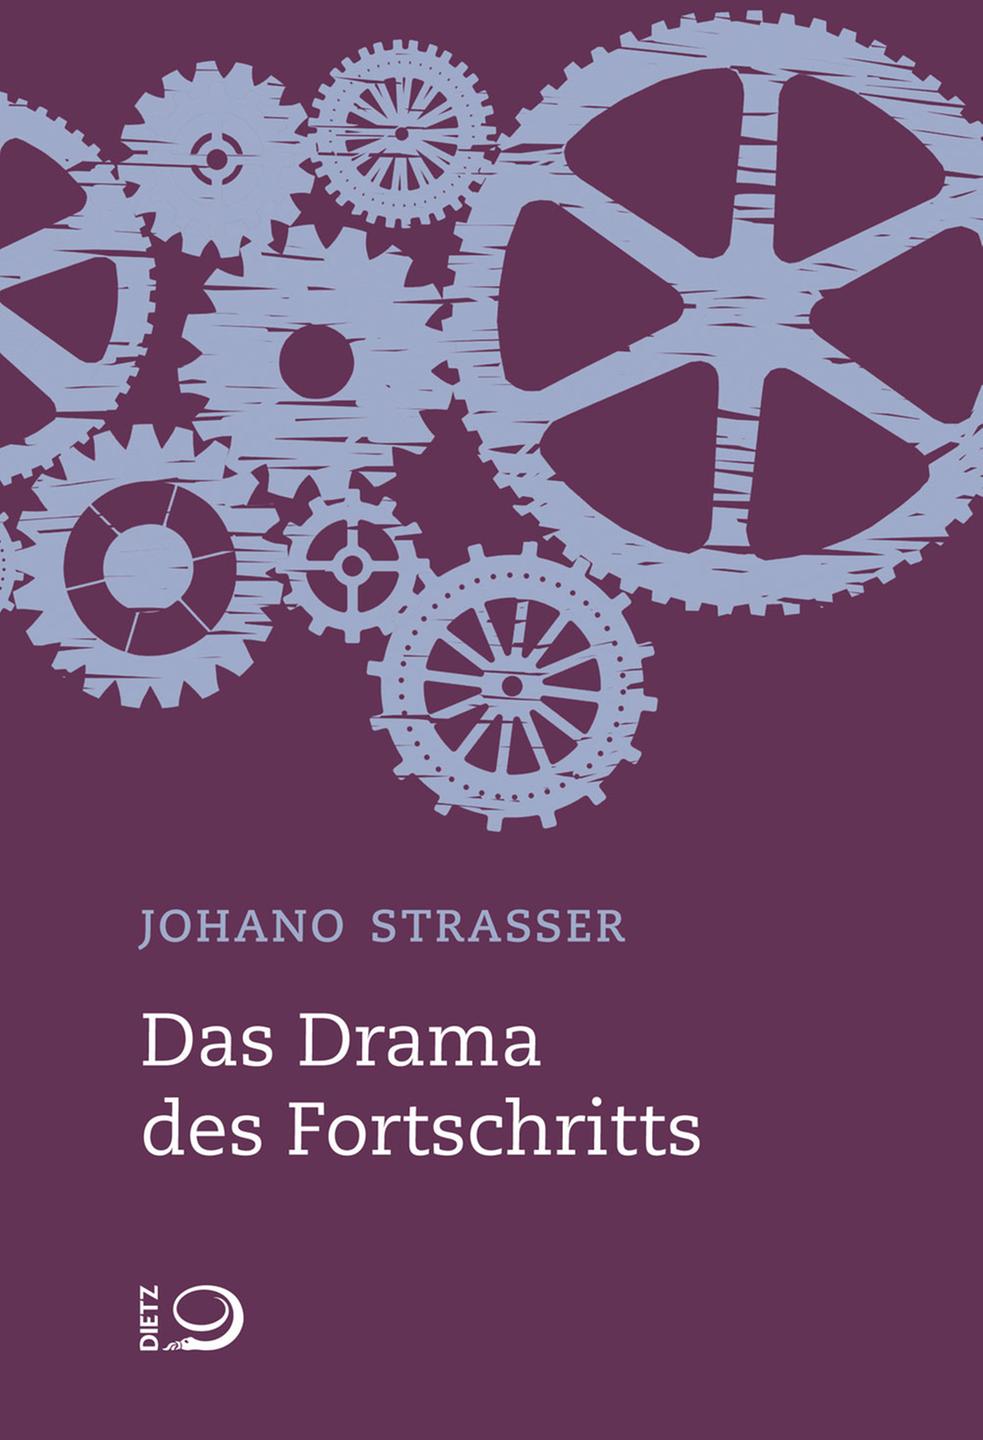 Buchcover: "Das Drama des Fortschritts" von Johano Strasser